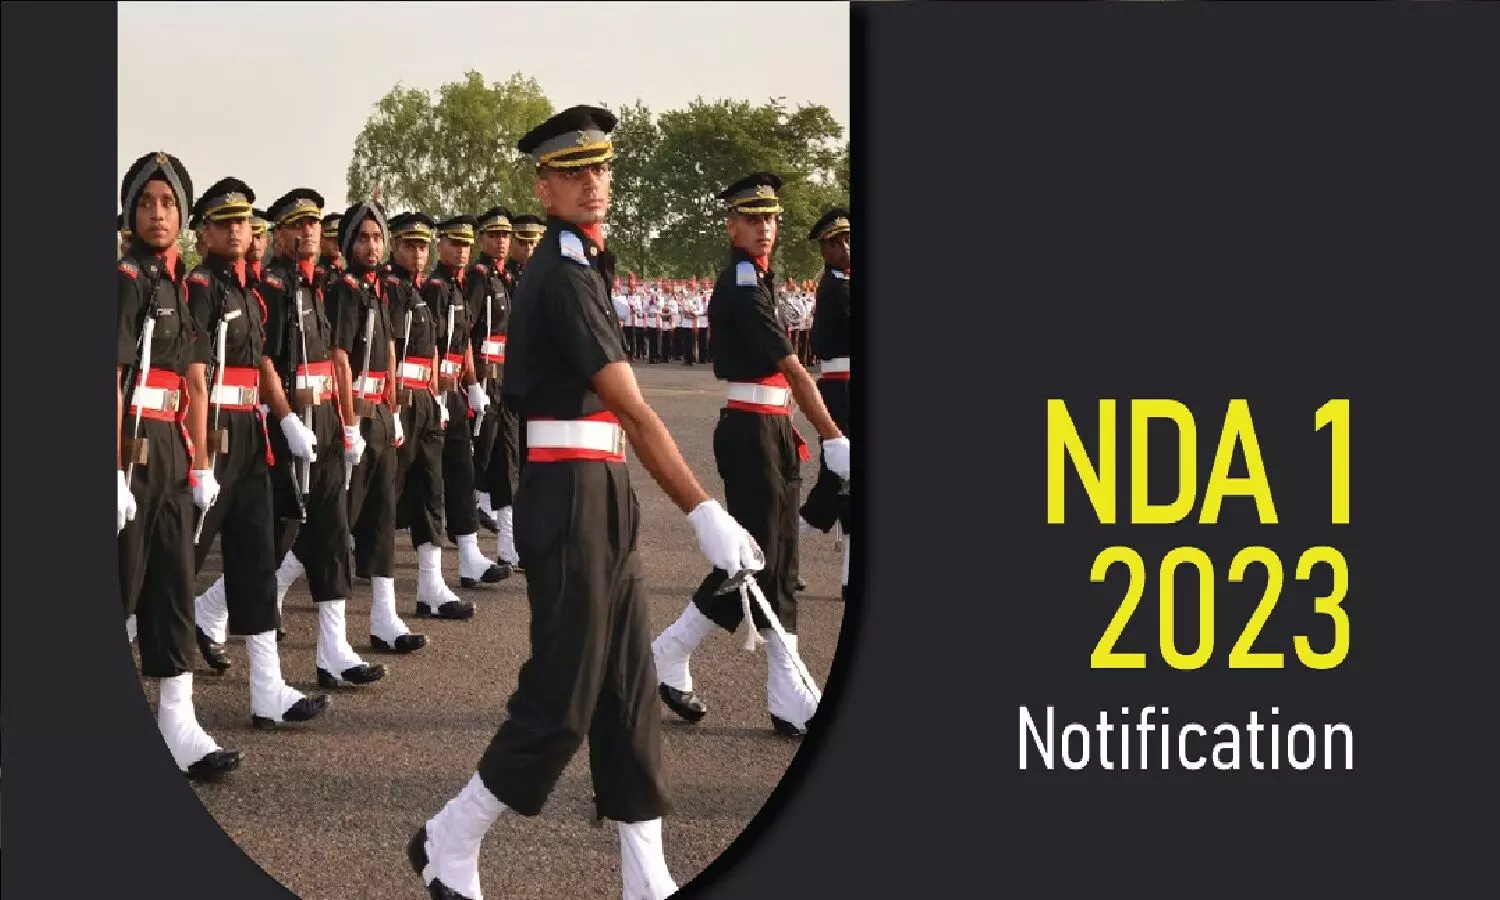 NDA 2023 Notification: एनडीए एग्जाम का नोटिफिकेशन आ गया, पद, आवेदन, और परीक्षा के बारे में सब जान लो